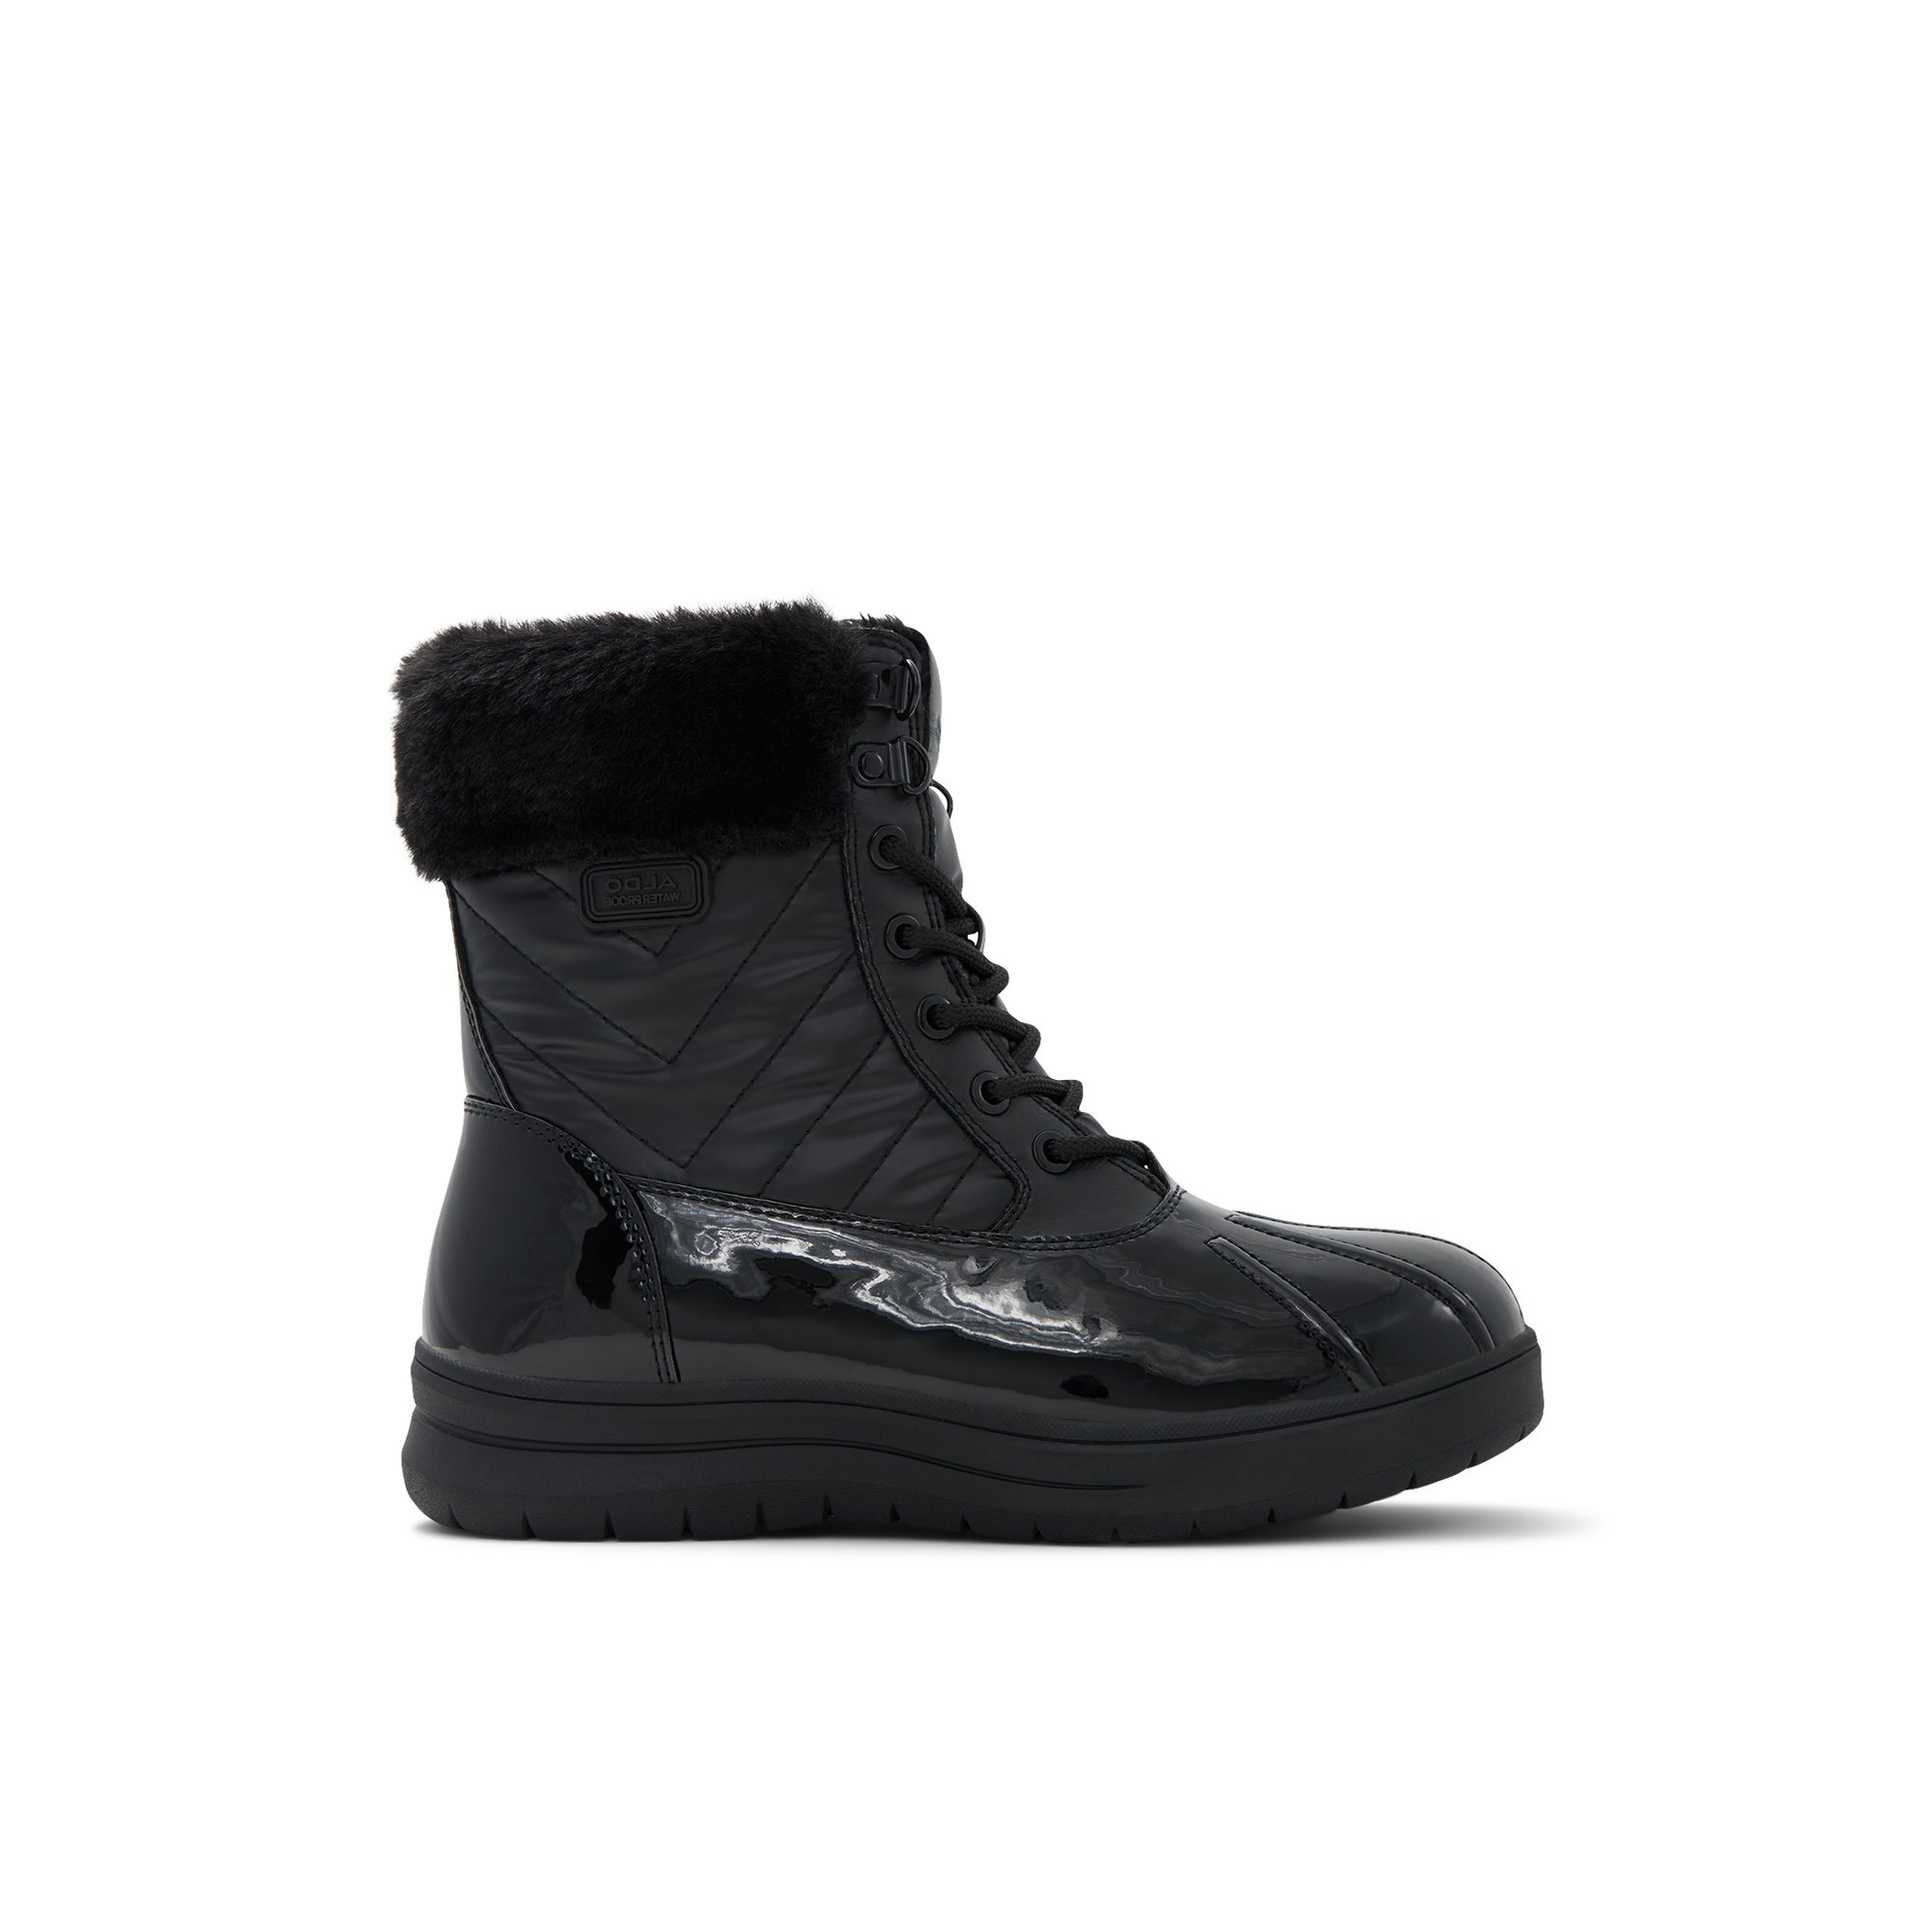 ALDO Flurrys - Women's Boots Winter - Black